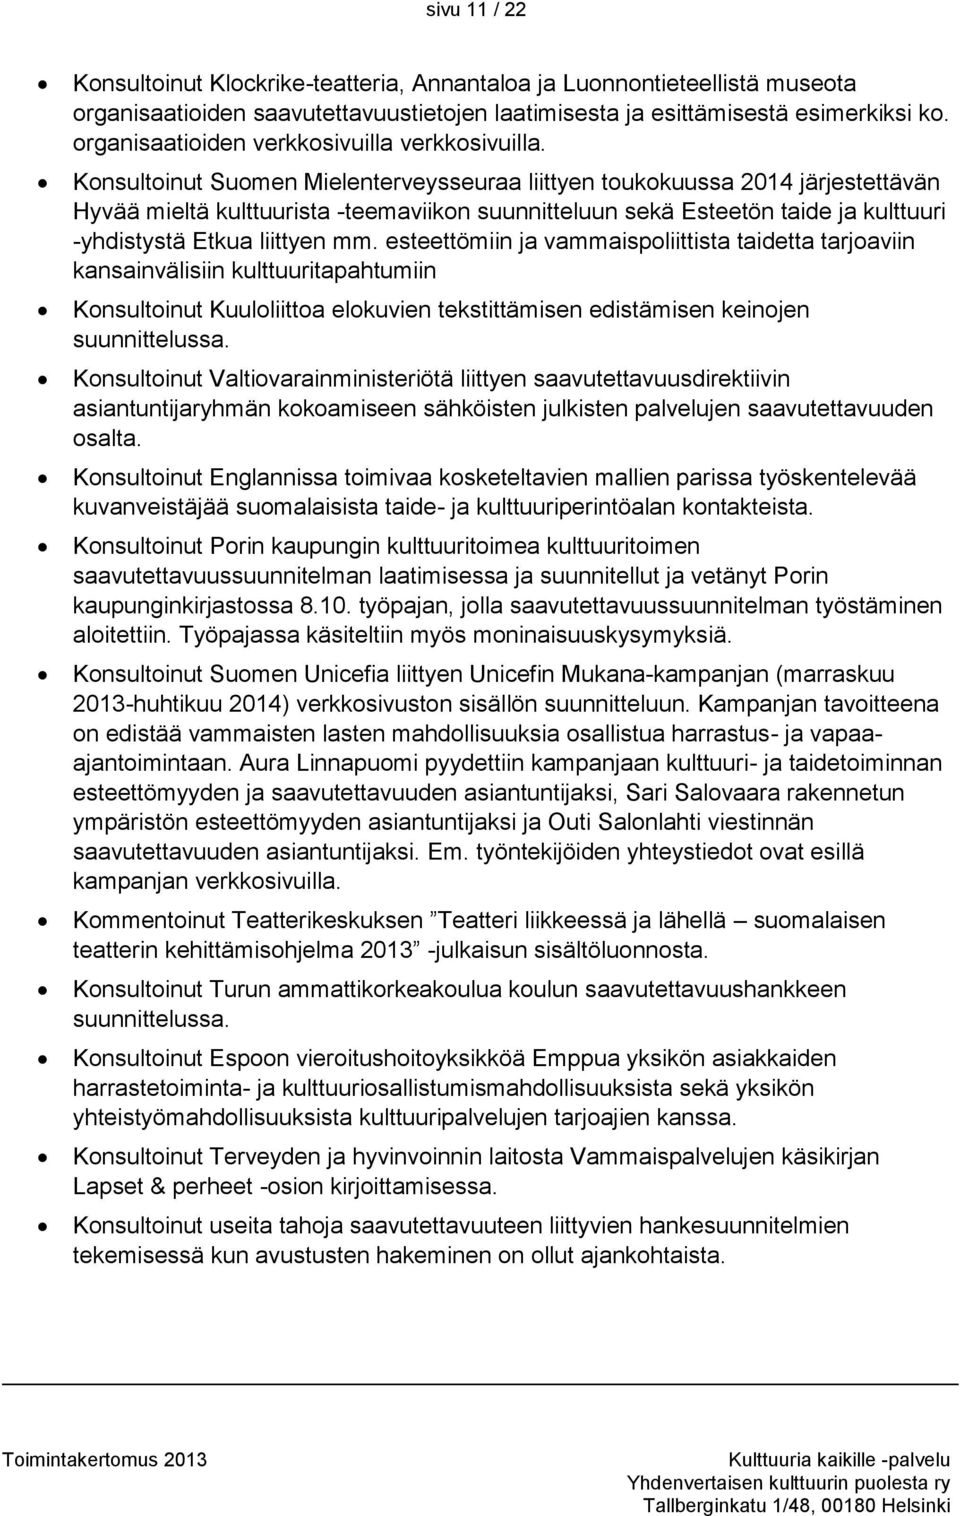 Konsultoinut Suomen Mielenterveysseuraa liittyen toukokuussa 2014 järjestettävän Hyvää mieltä kulttuurista -teemaviikon suunnitteluun sekä Esteetön taide ja kulttuuri -yhdistystä Etkua liittyen mm.